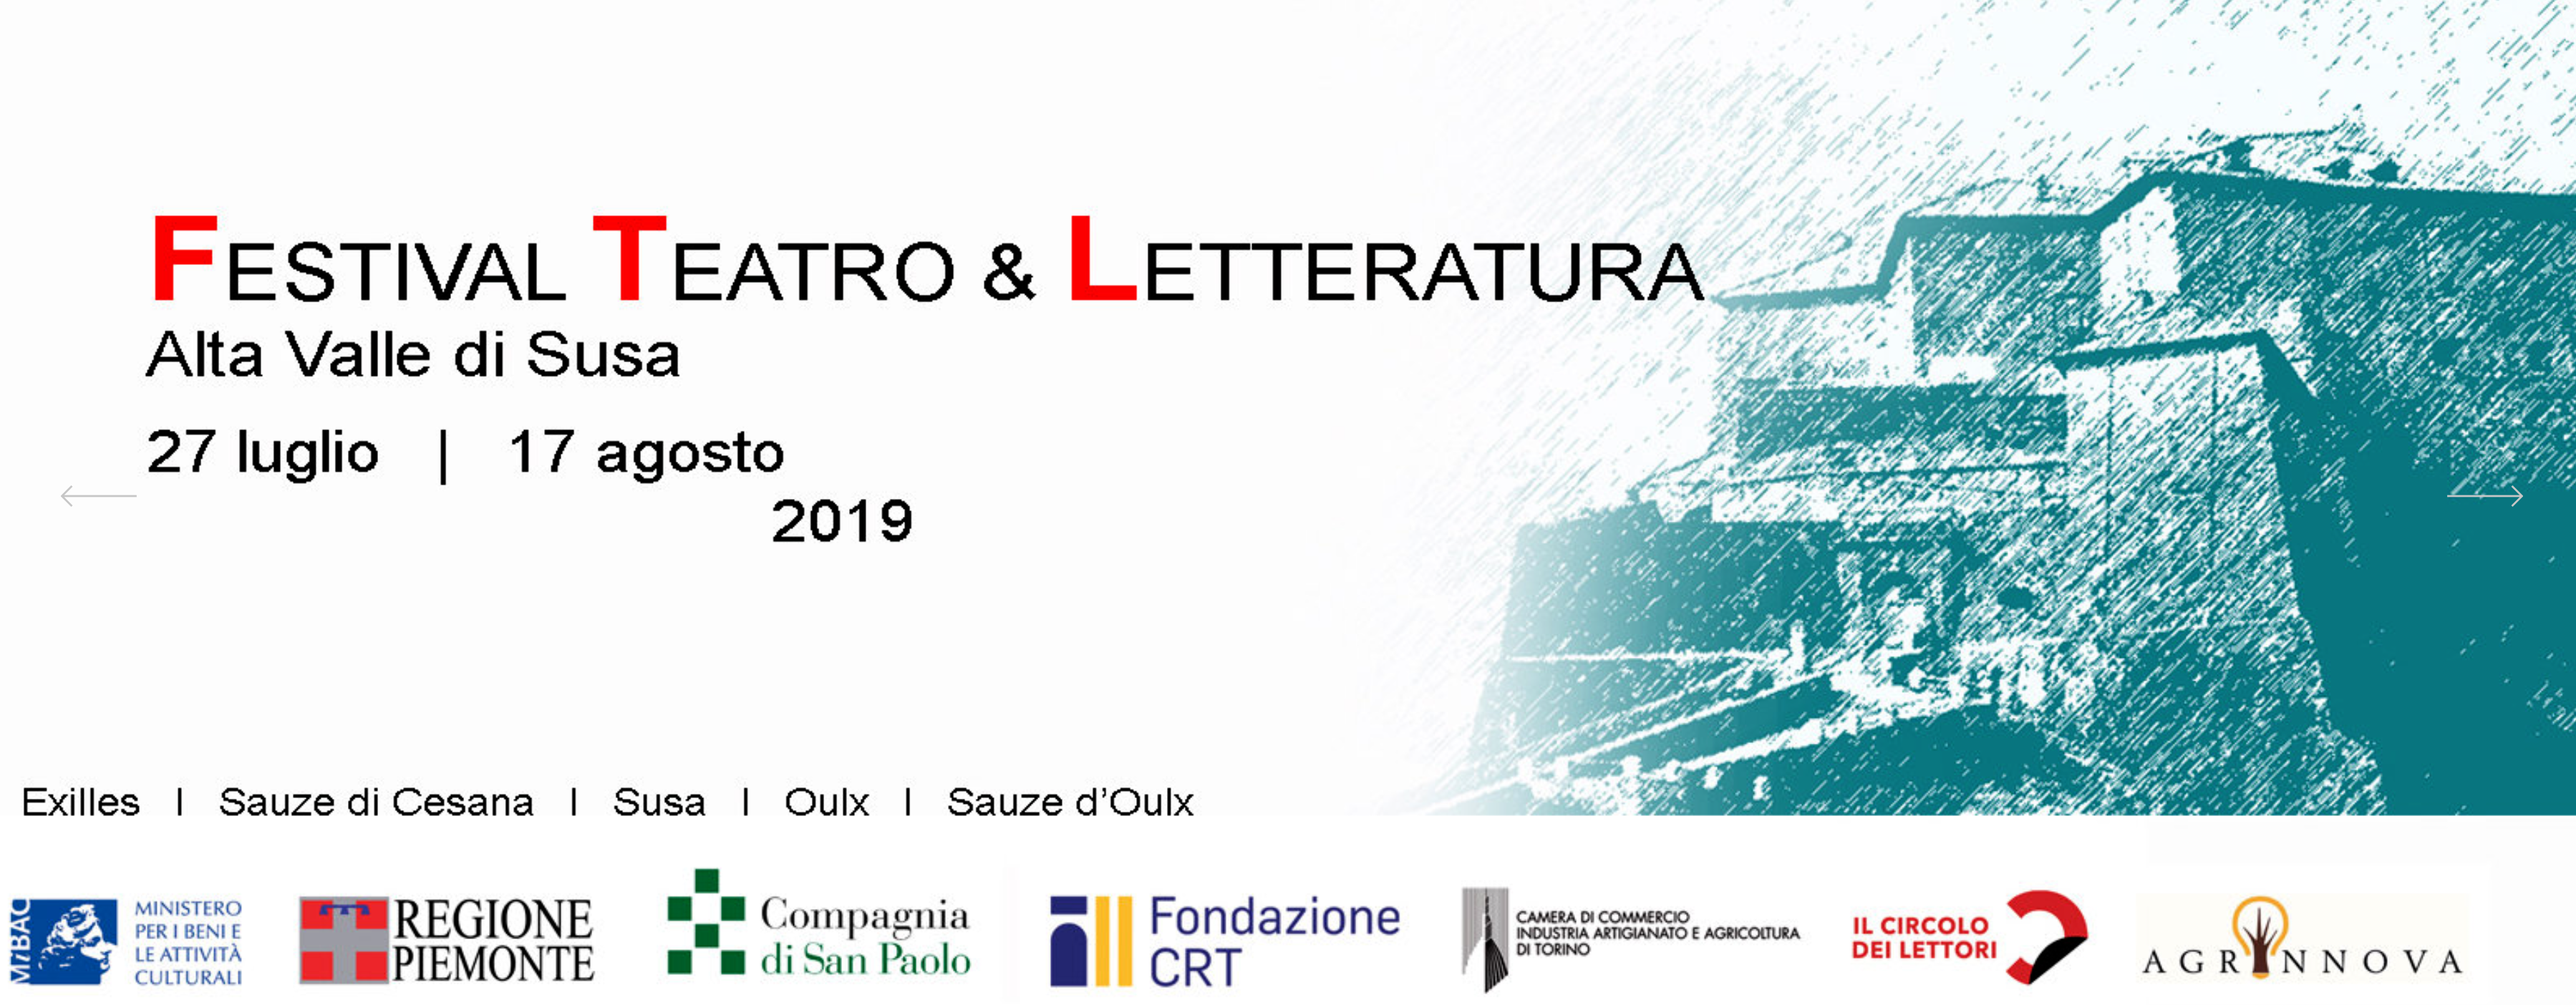 Festival Teatro e Letteratura 2019